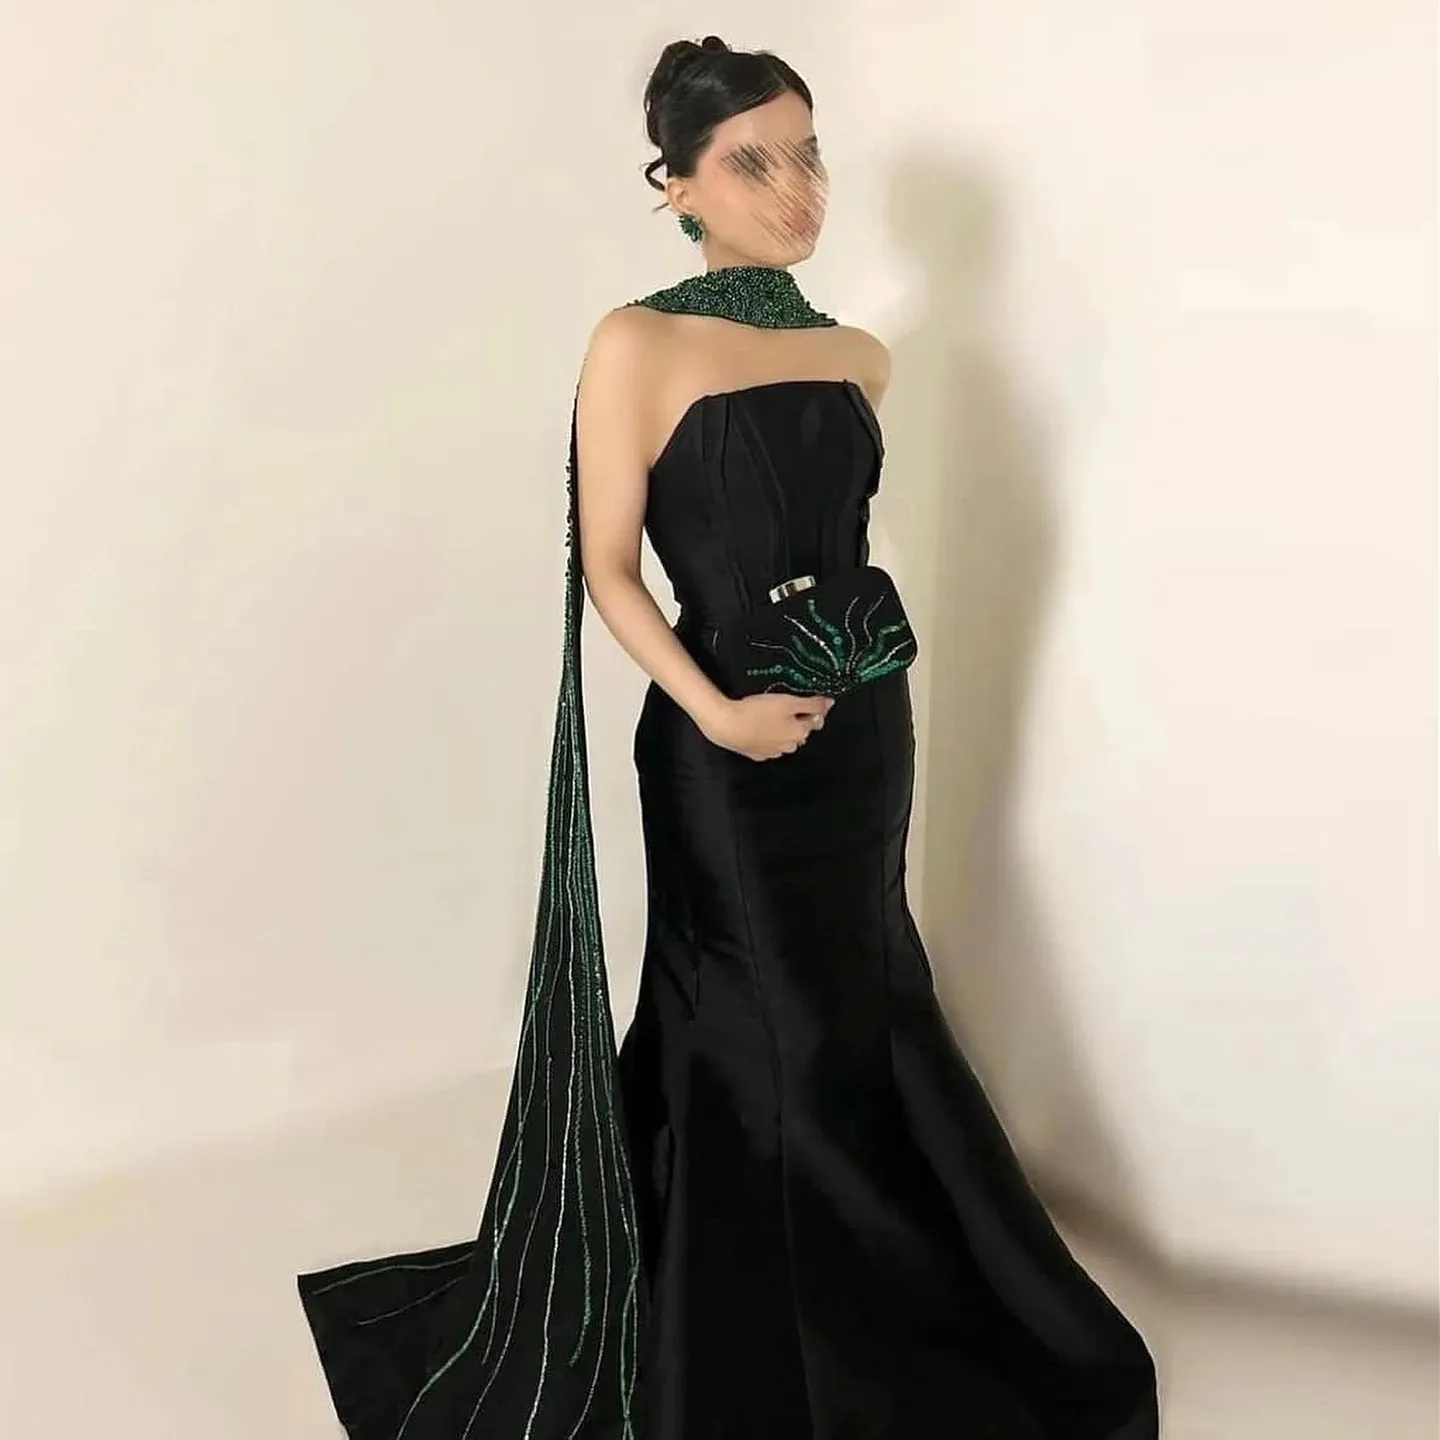 Gaun malam Arab putri duyung hitam elegan dengan syal mewah manik-manik Dubai gaun pesta Formal pernikahan wanita SZ421